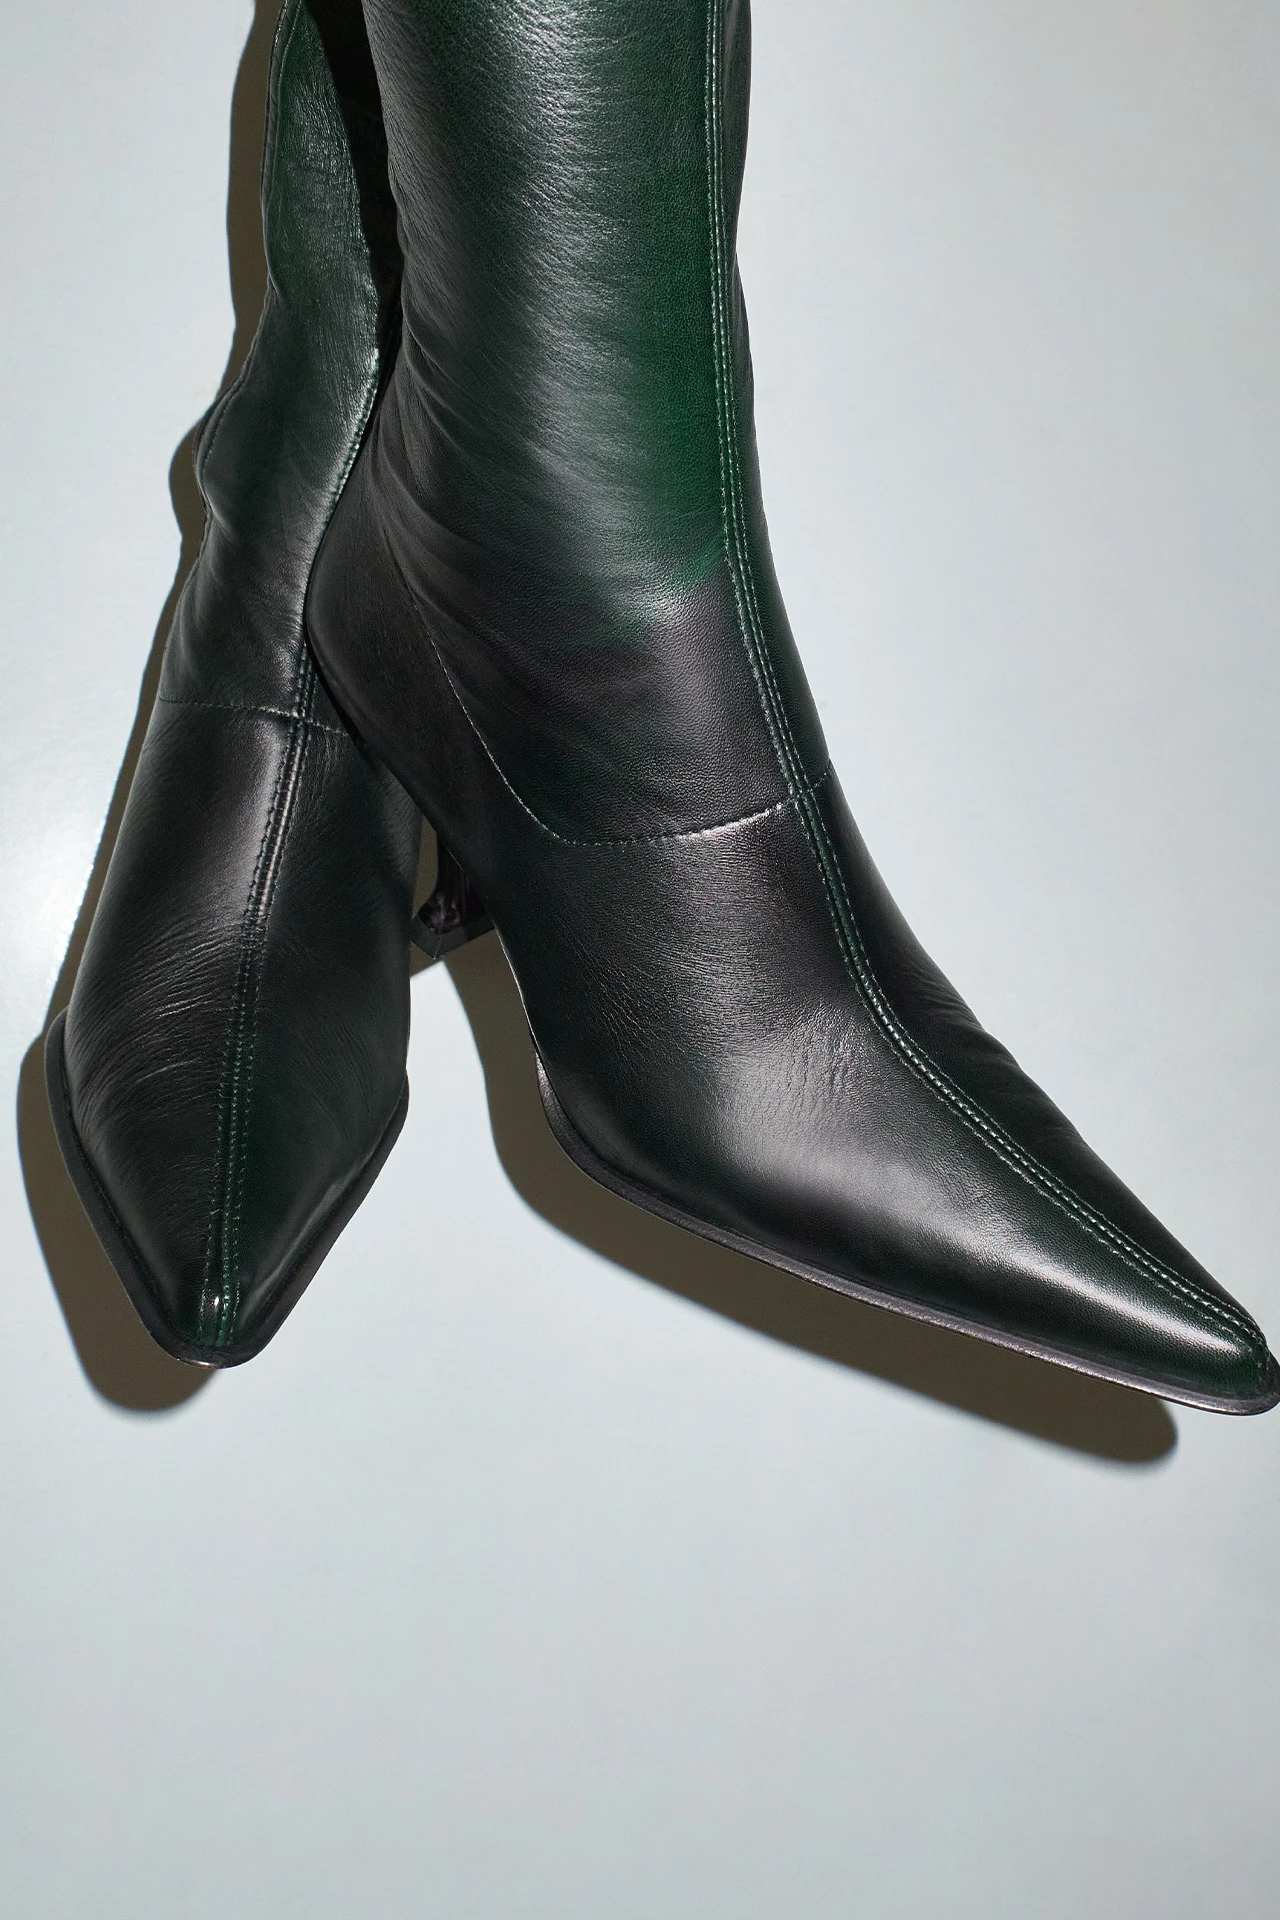 EC-Miista-Carlita-Green-Black-Degradee-Tall-Boots-03